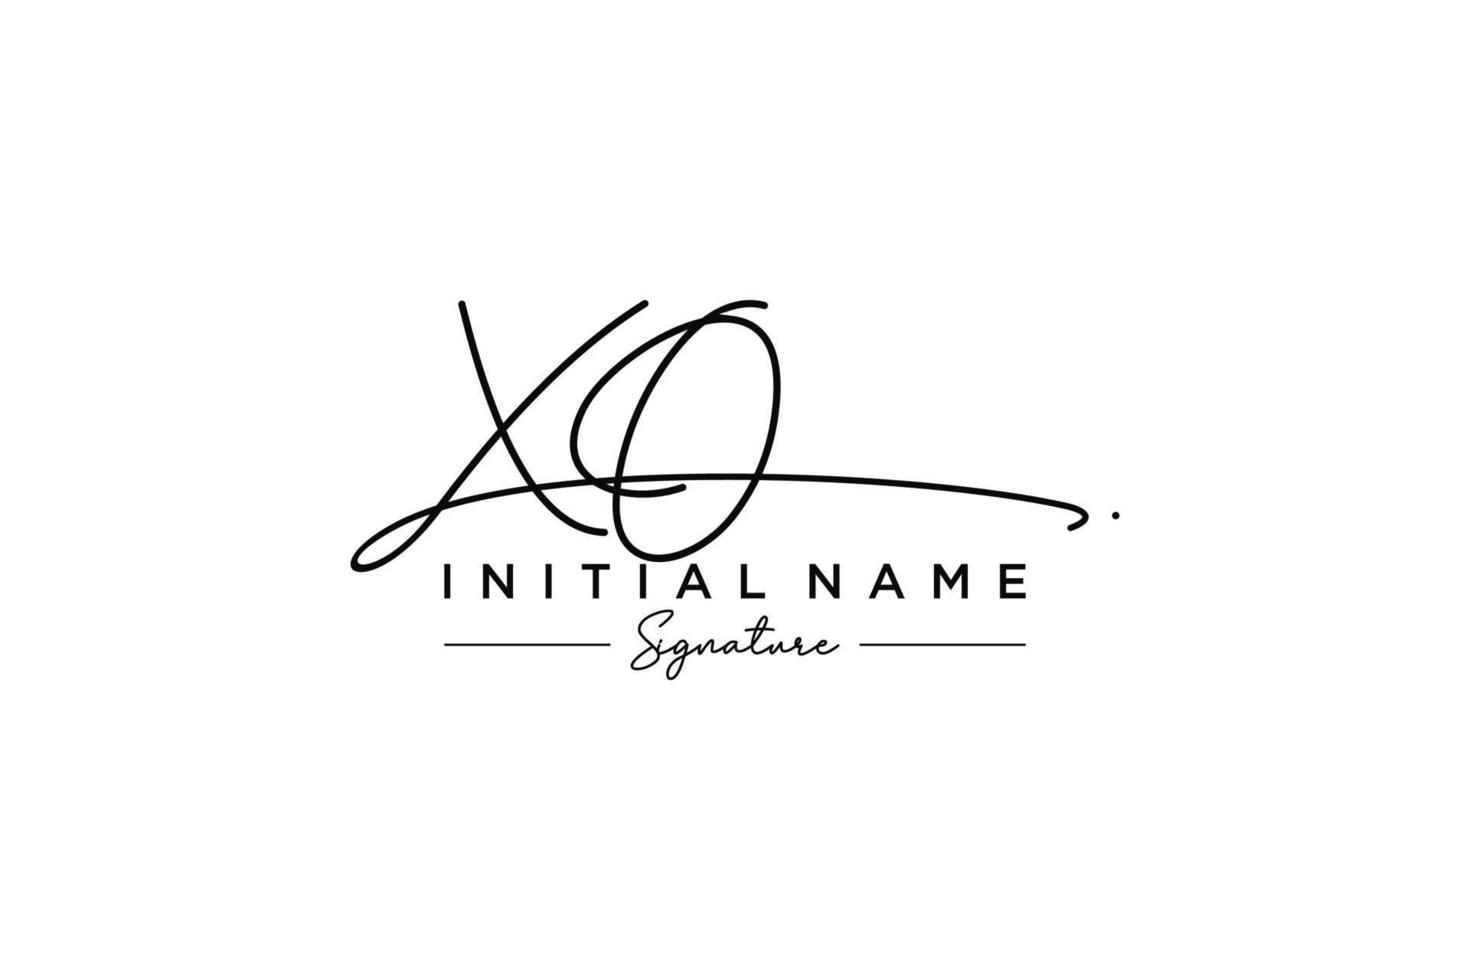 vector de plantilla de logotipo de firma inicial xo. ilustración de vector de letras de caligrafía dibujada a mano.